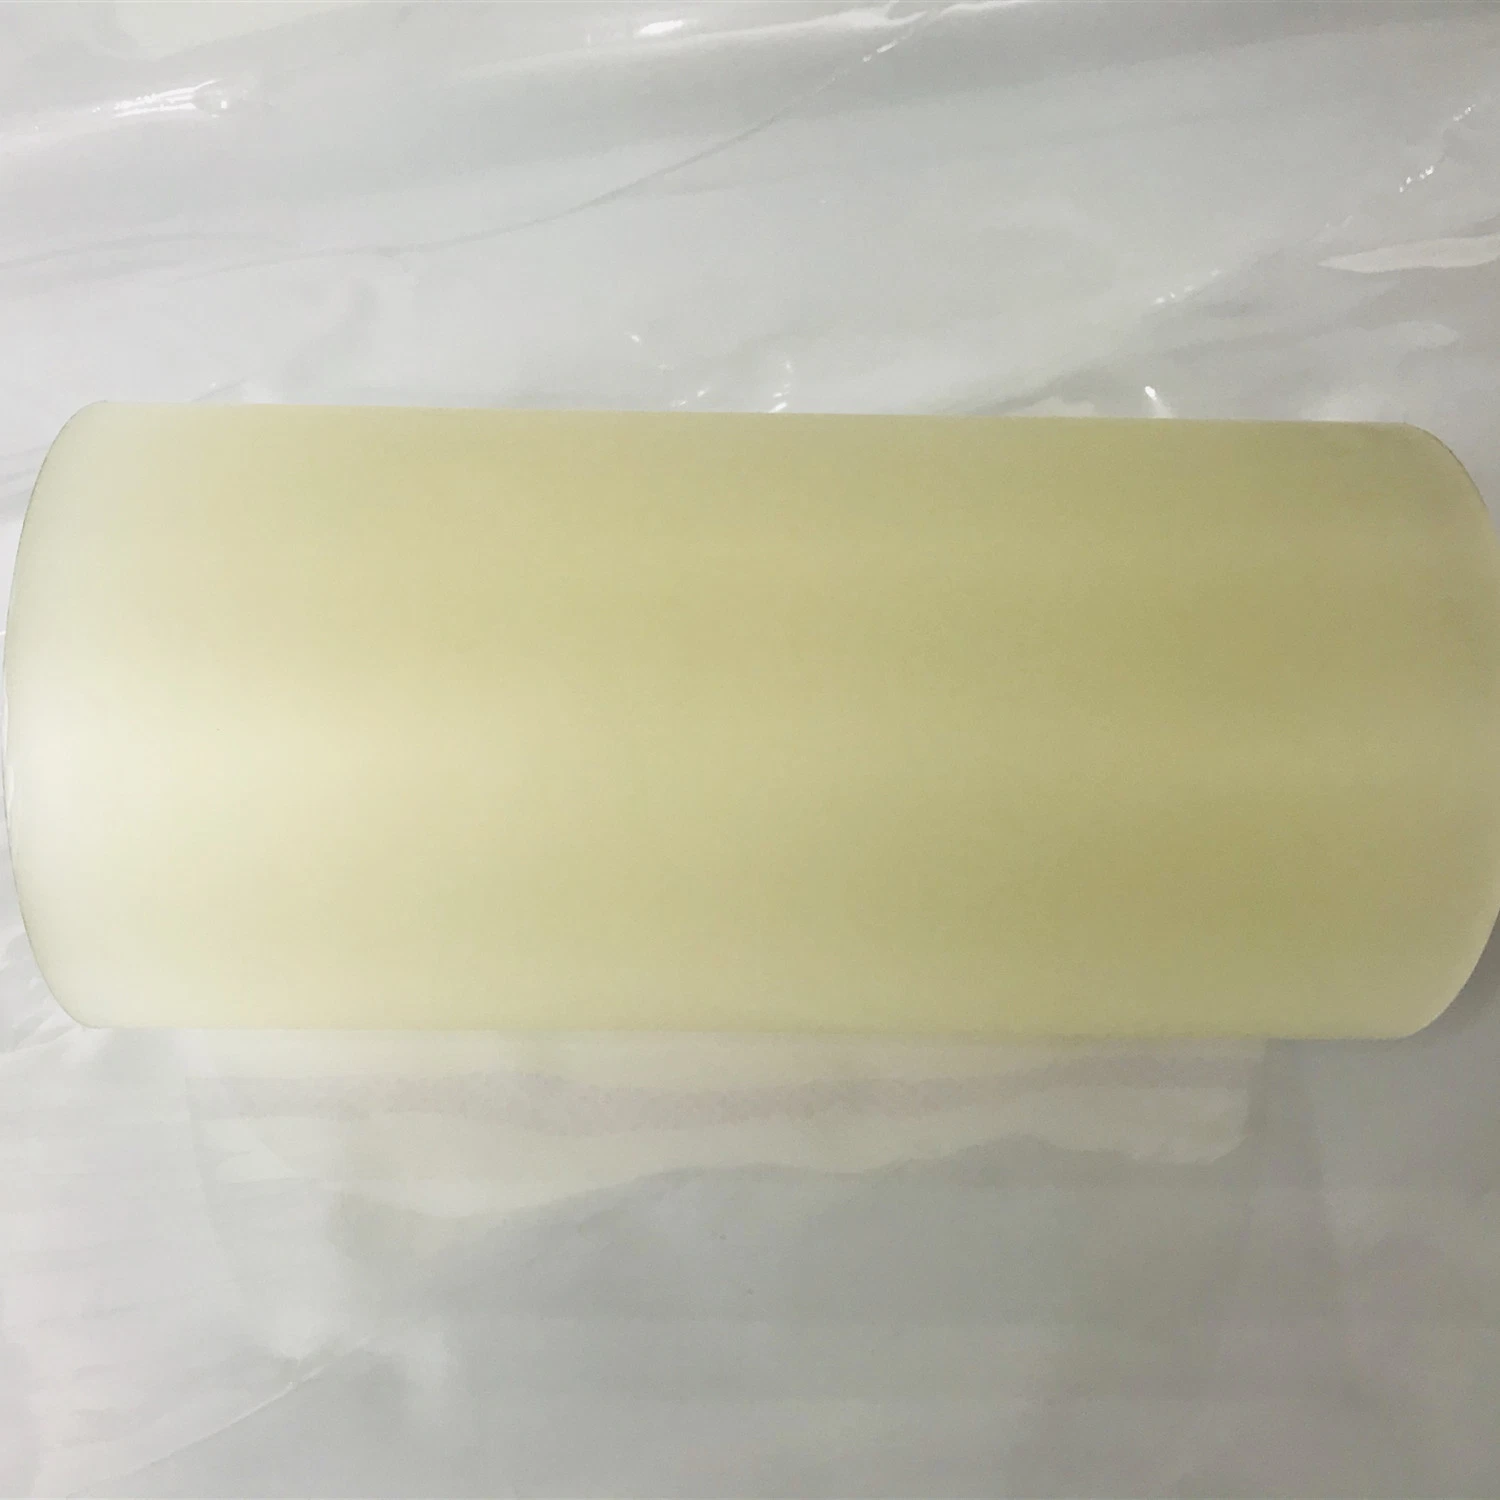 Papel adhesivo impreso por más de laminado Mate Sp110 de la cinta con base disolvente